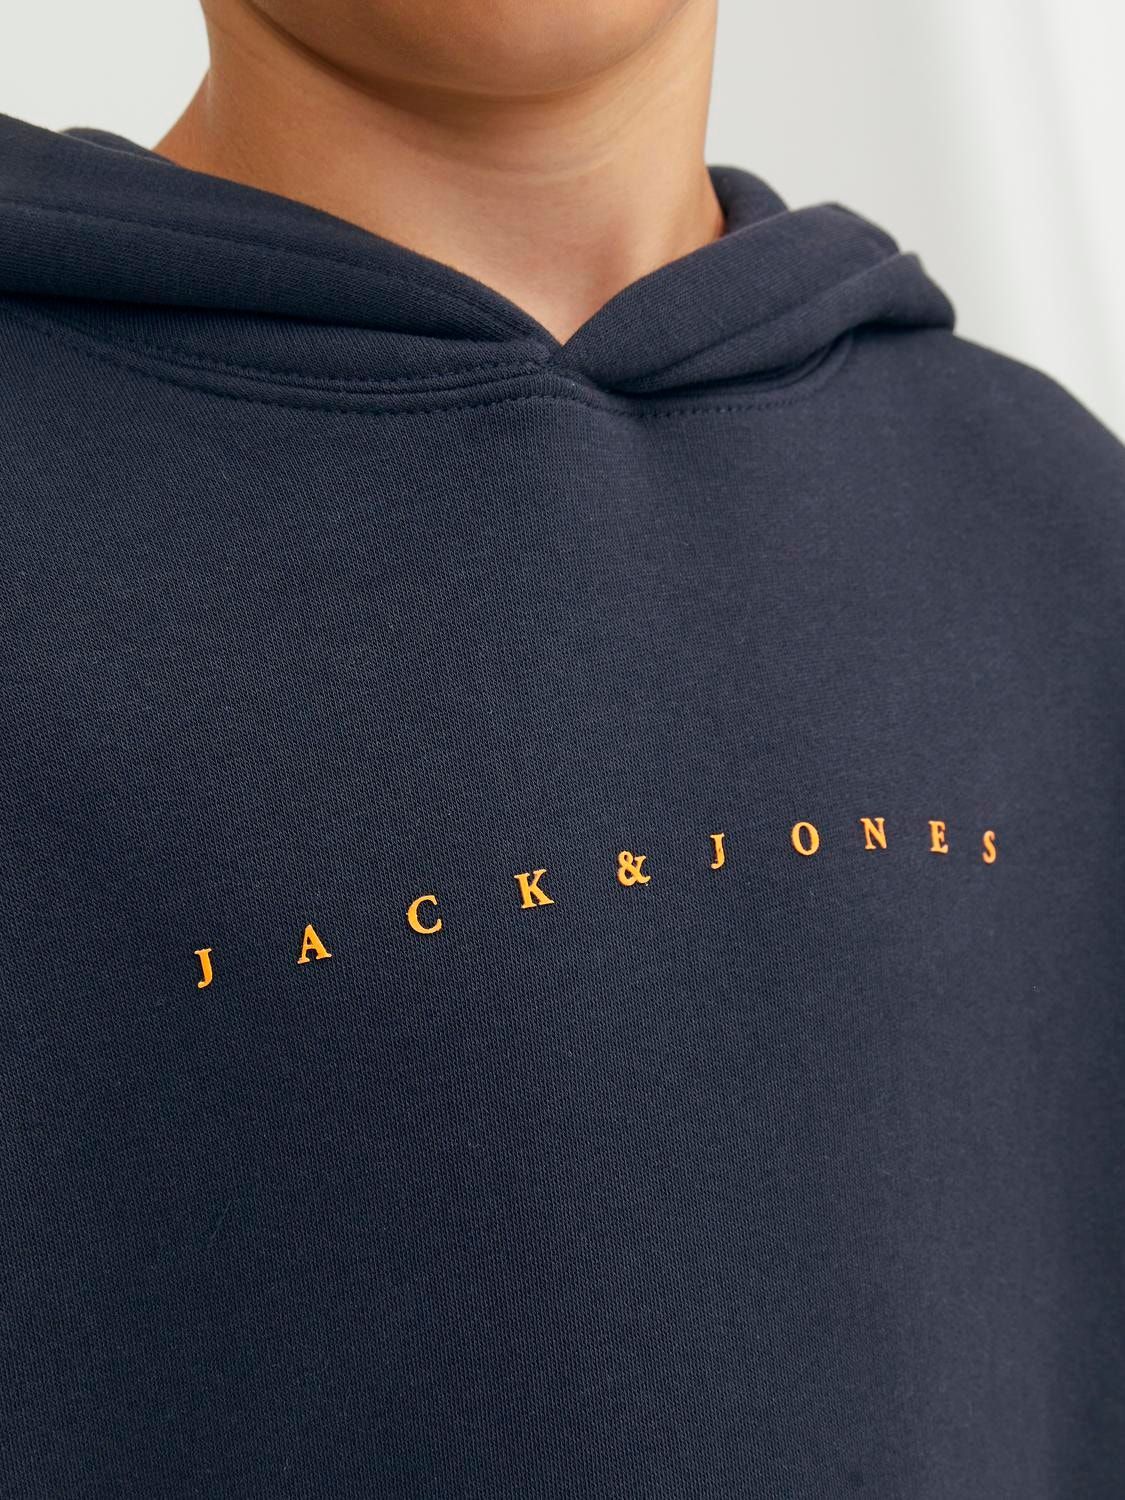 Jack & Jones Z logo Bluza z kapturem Dla chłopców -Dark Navy - 12237468